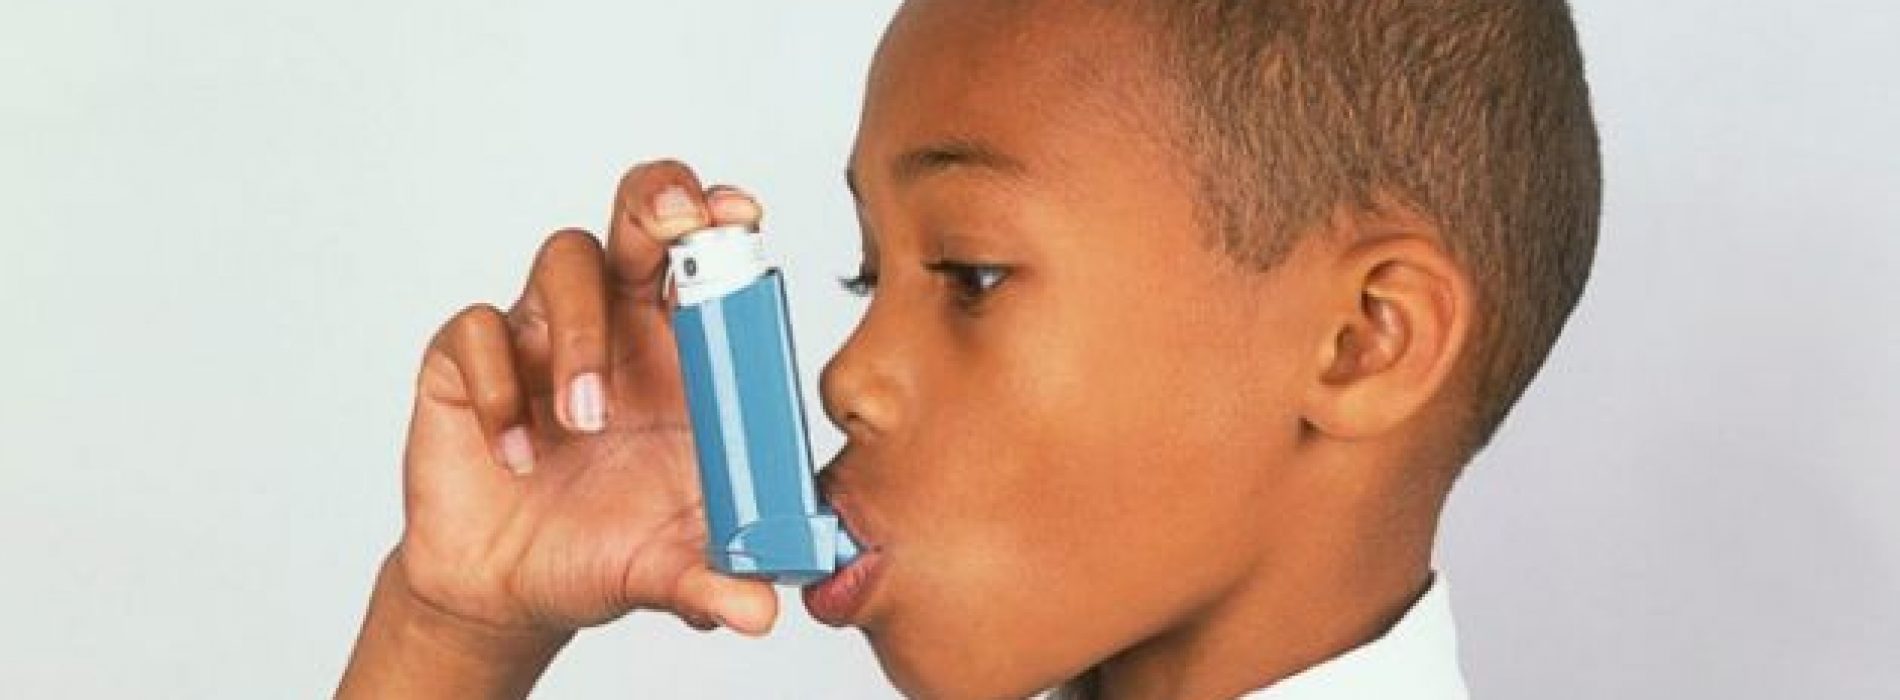 Astma bij kinderen WAARSCHUWING: Het eten van DIT voedsel brengt kinderen in gevaar, onthult NIEUWE studie